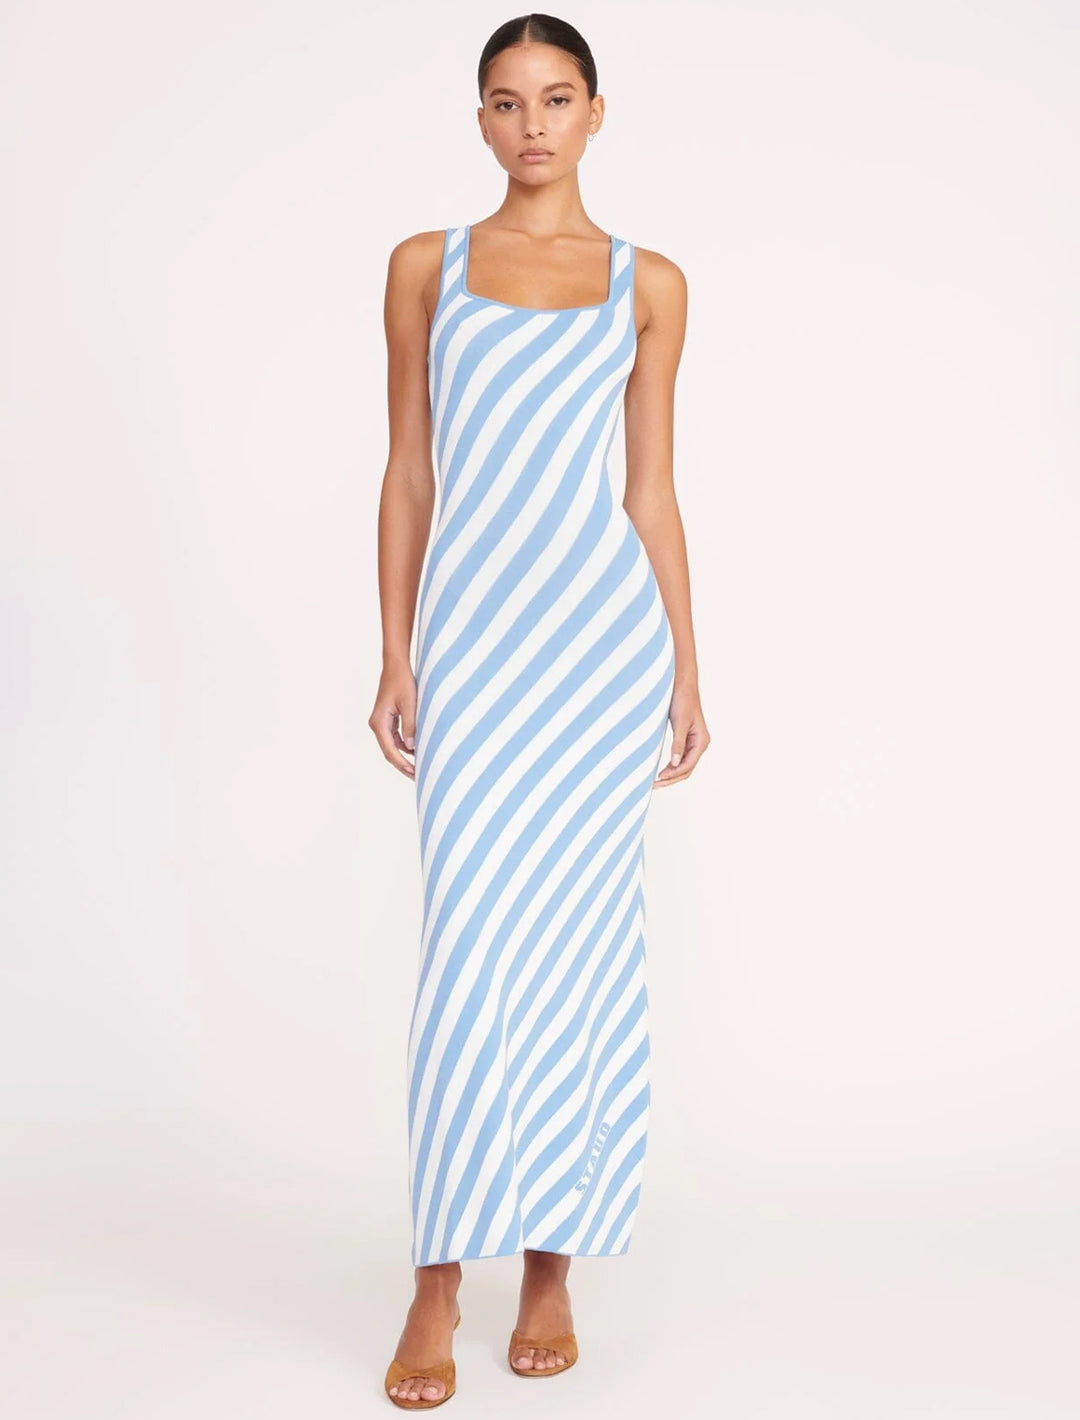 Model wearing STAUD's katie dress in blue seashore stripe.